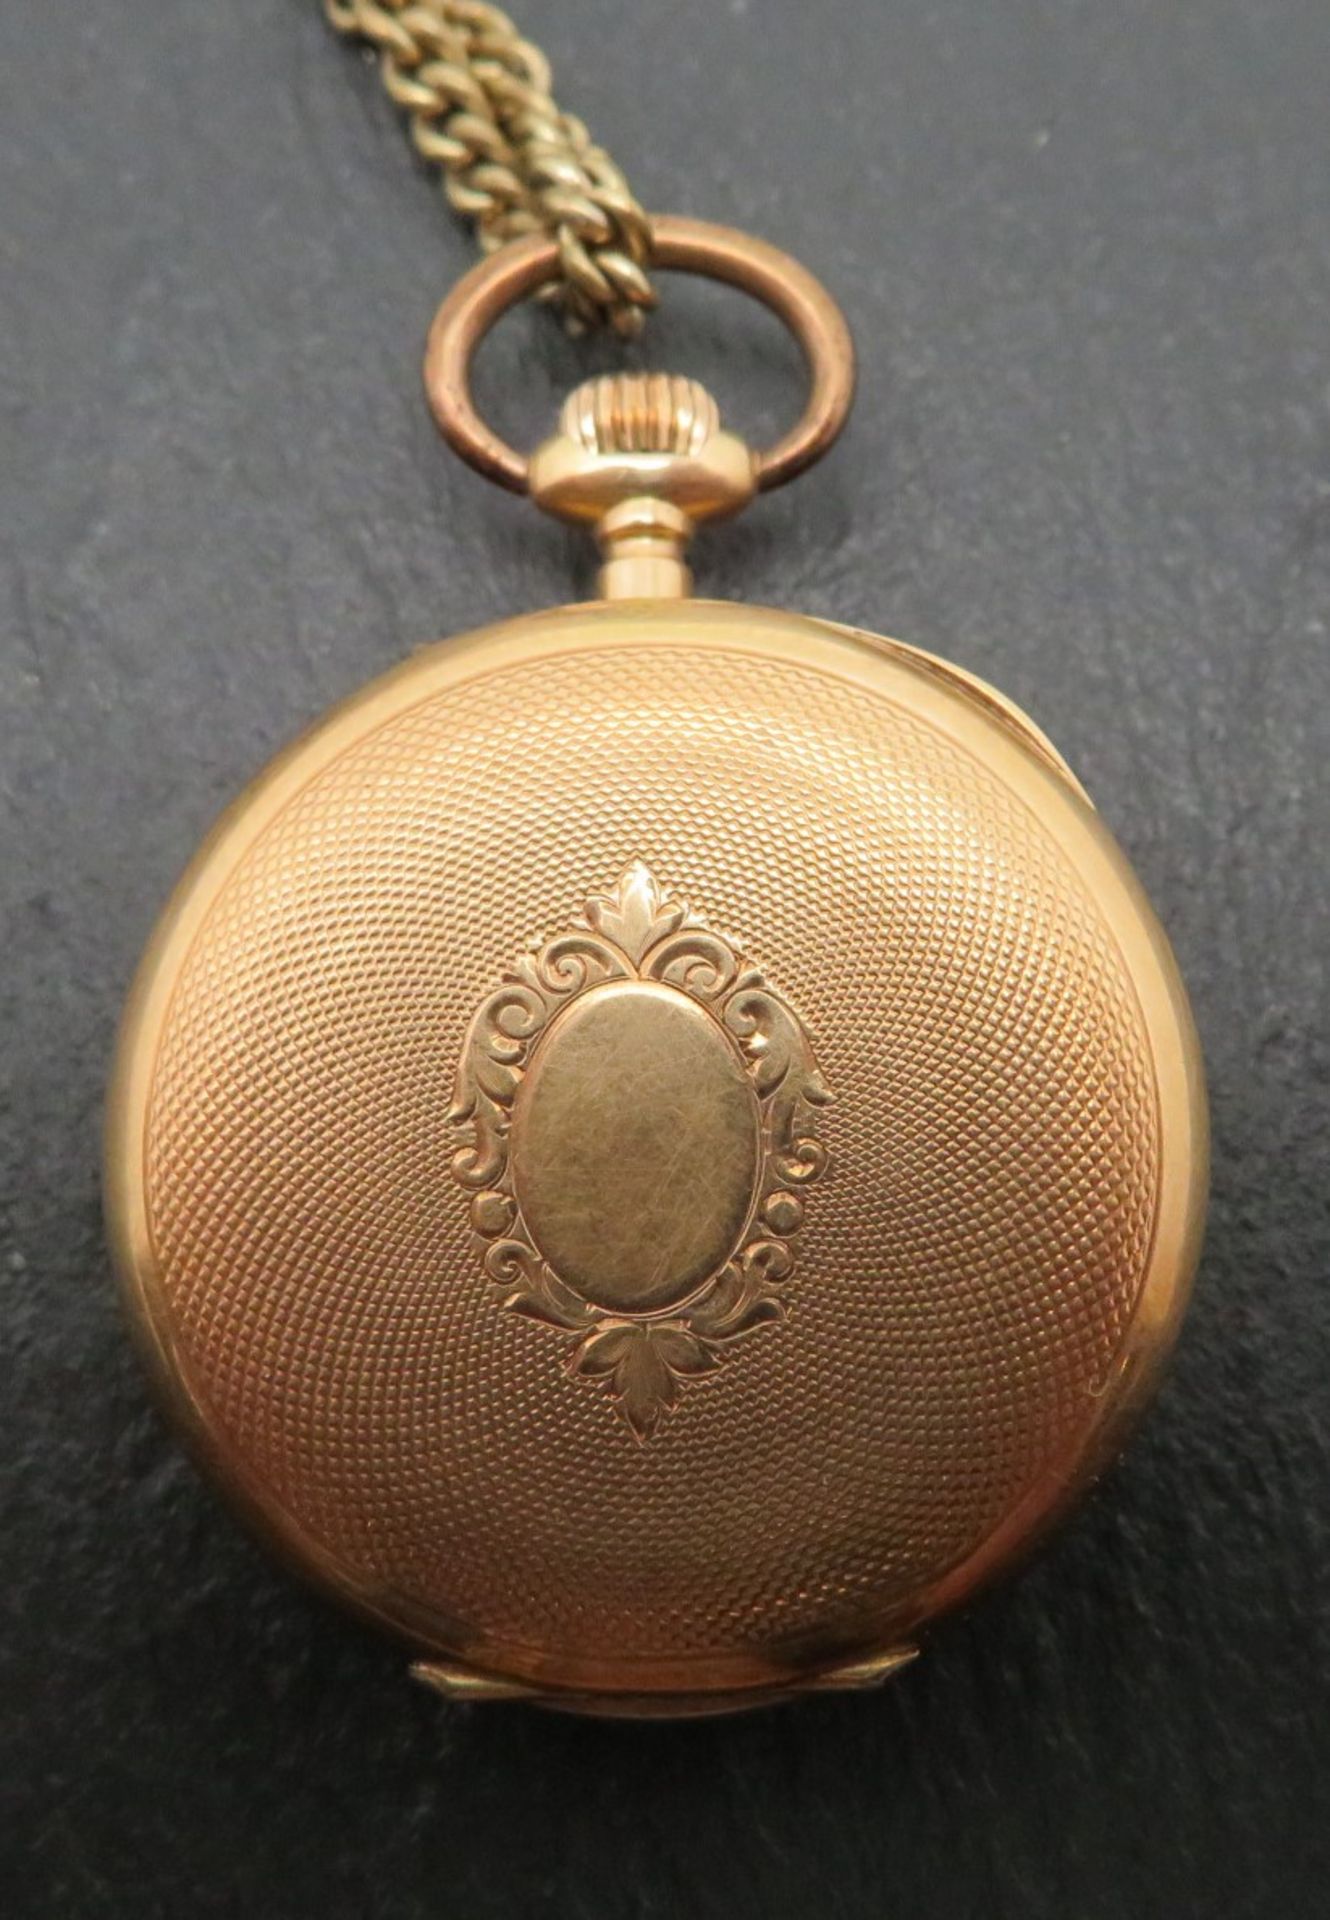 Damentaschenuhr an vergoldeter Uhrenkette, Gehäuse Gelbgold 585/000, punziert, Innendeckel Metall,  - Bild 2 aus 3